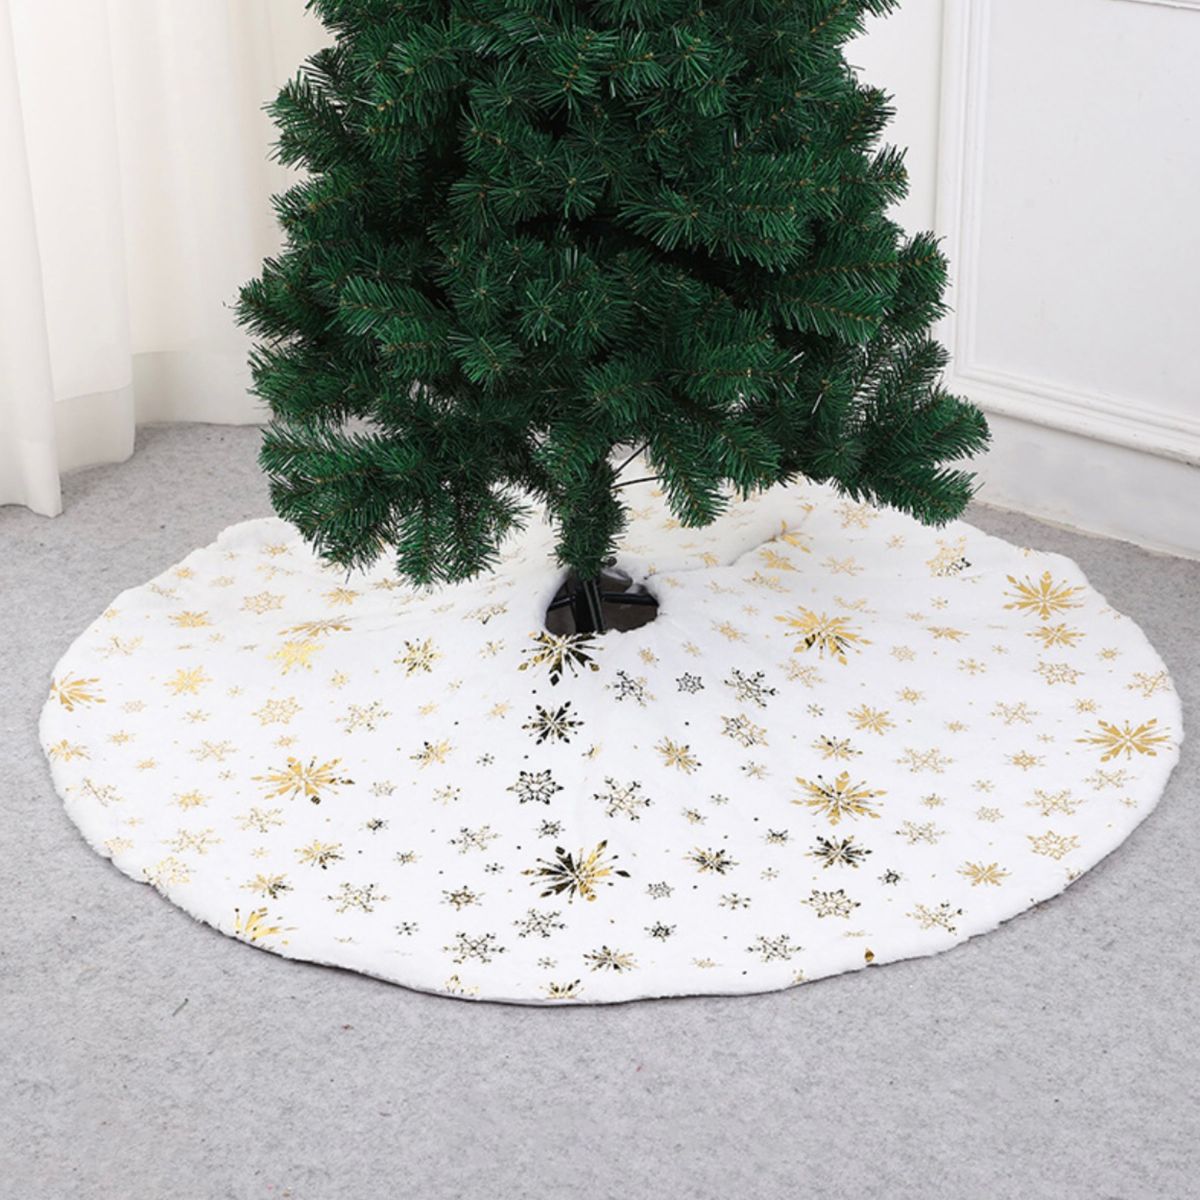 ツリースカート 78cm クリスマスツリー 足元隠し 装飾 ツリーマット ゴールド 金 白 プレゼント 雪 結晶